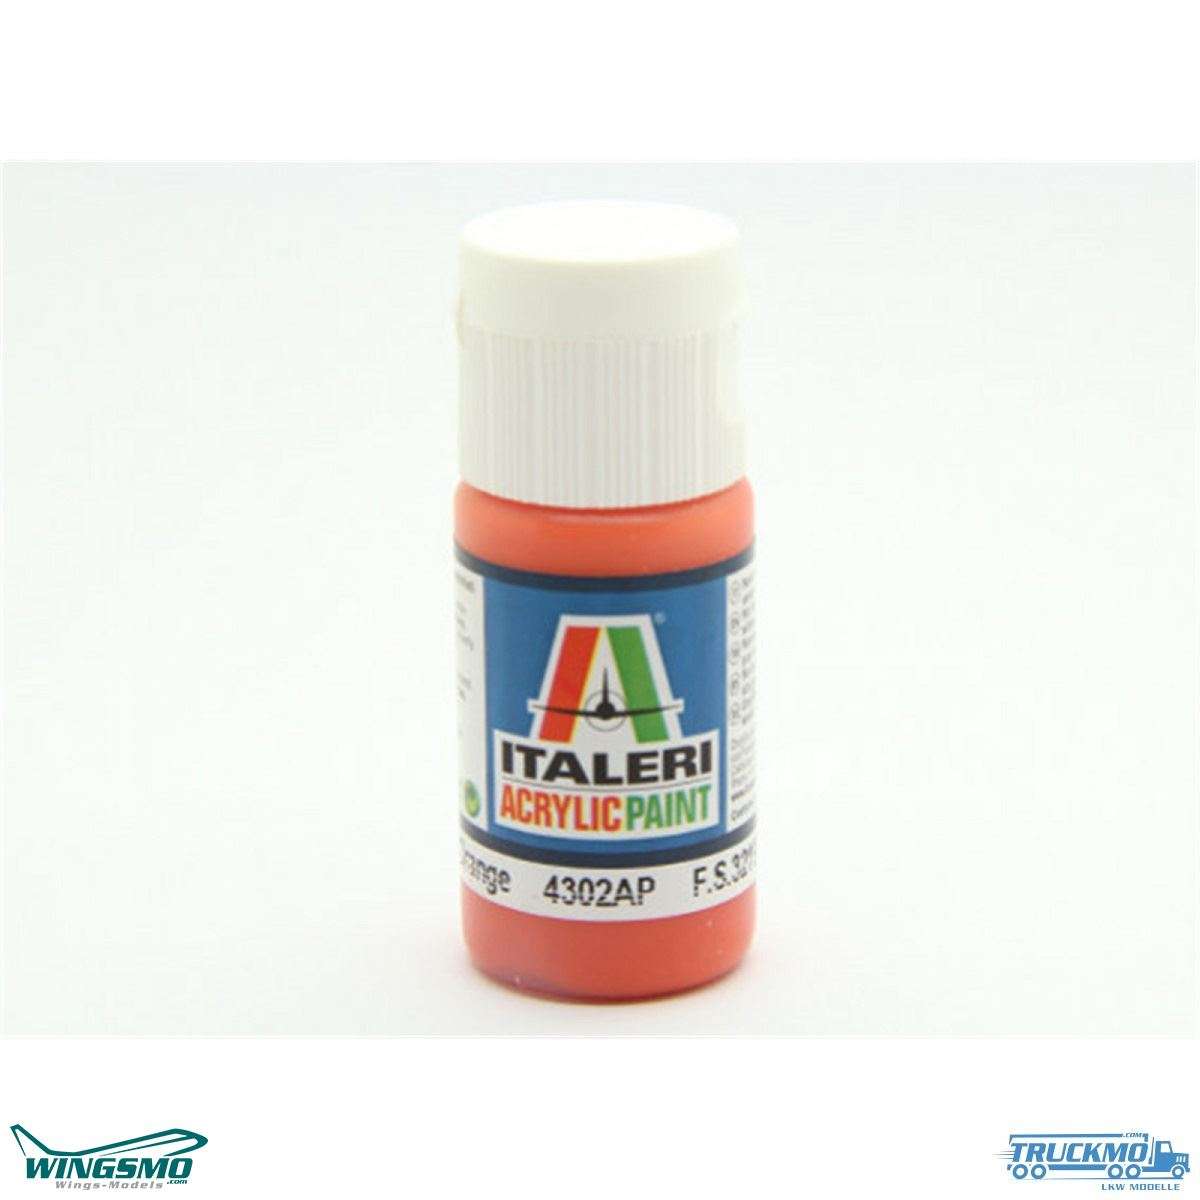 Italeri acrylic paints orange matt 20ml 4302